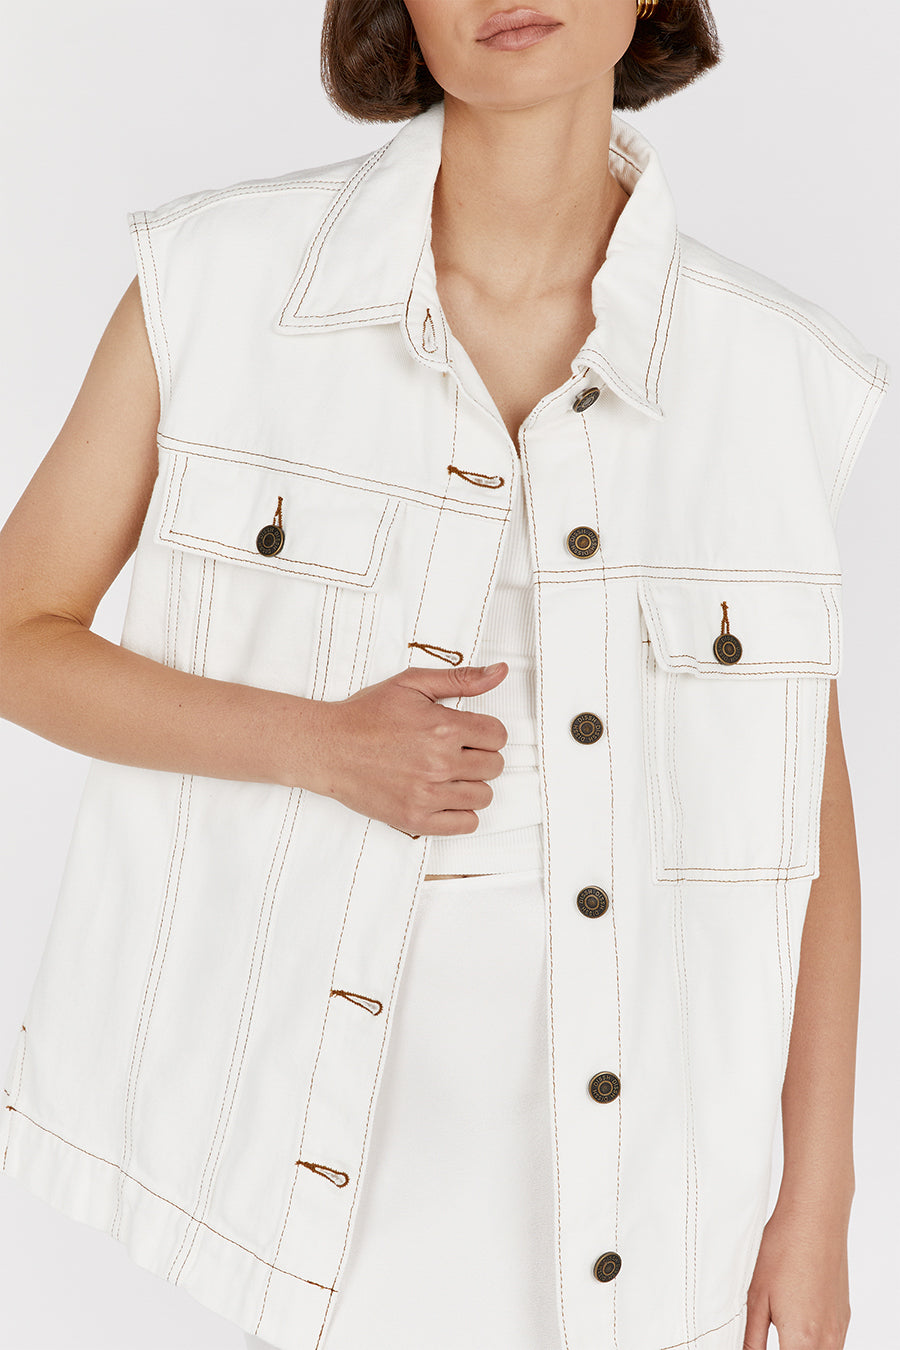 Allegra K Women's Sleeveless Drawstring Waist Detachable Hooded Denim  Jacket Vest : Target